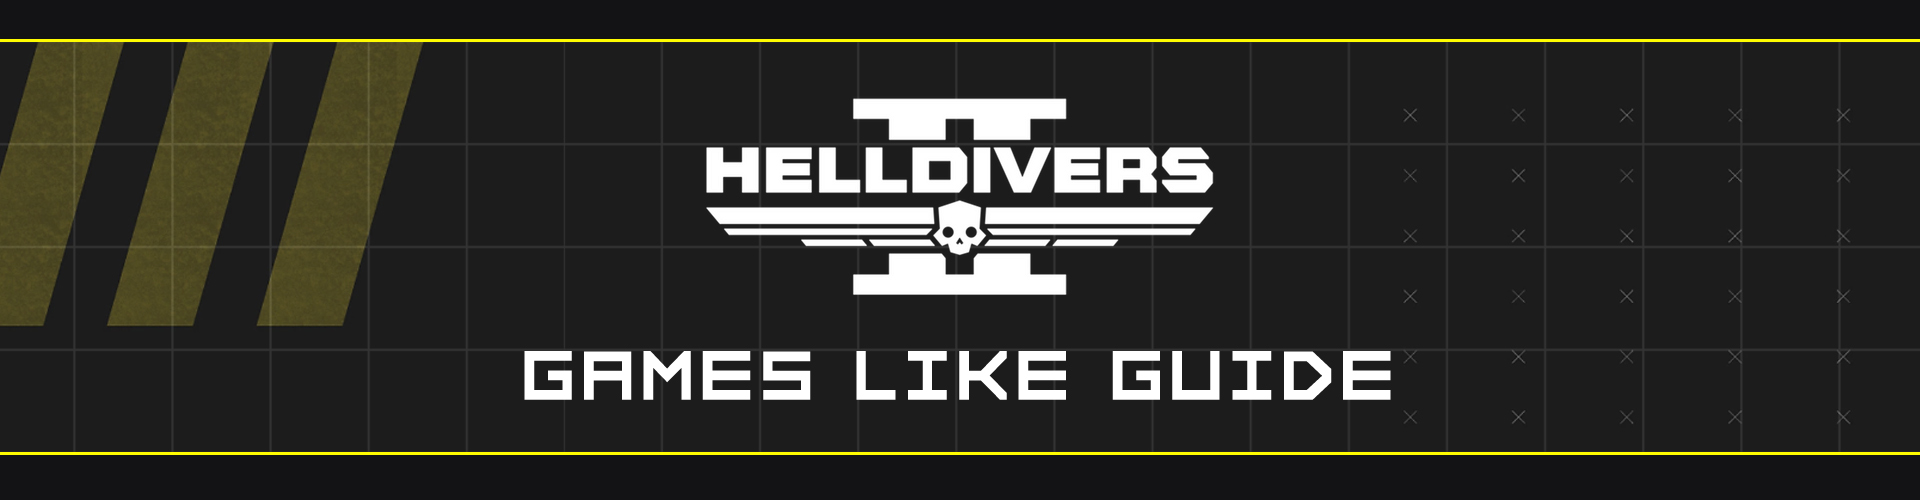 Los Mejores Juegos Como Helldivers 2